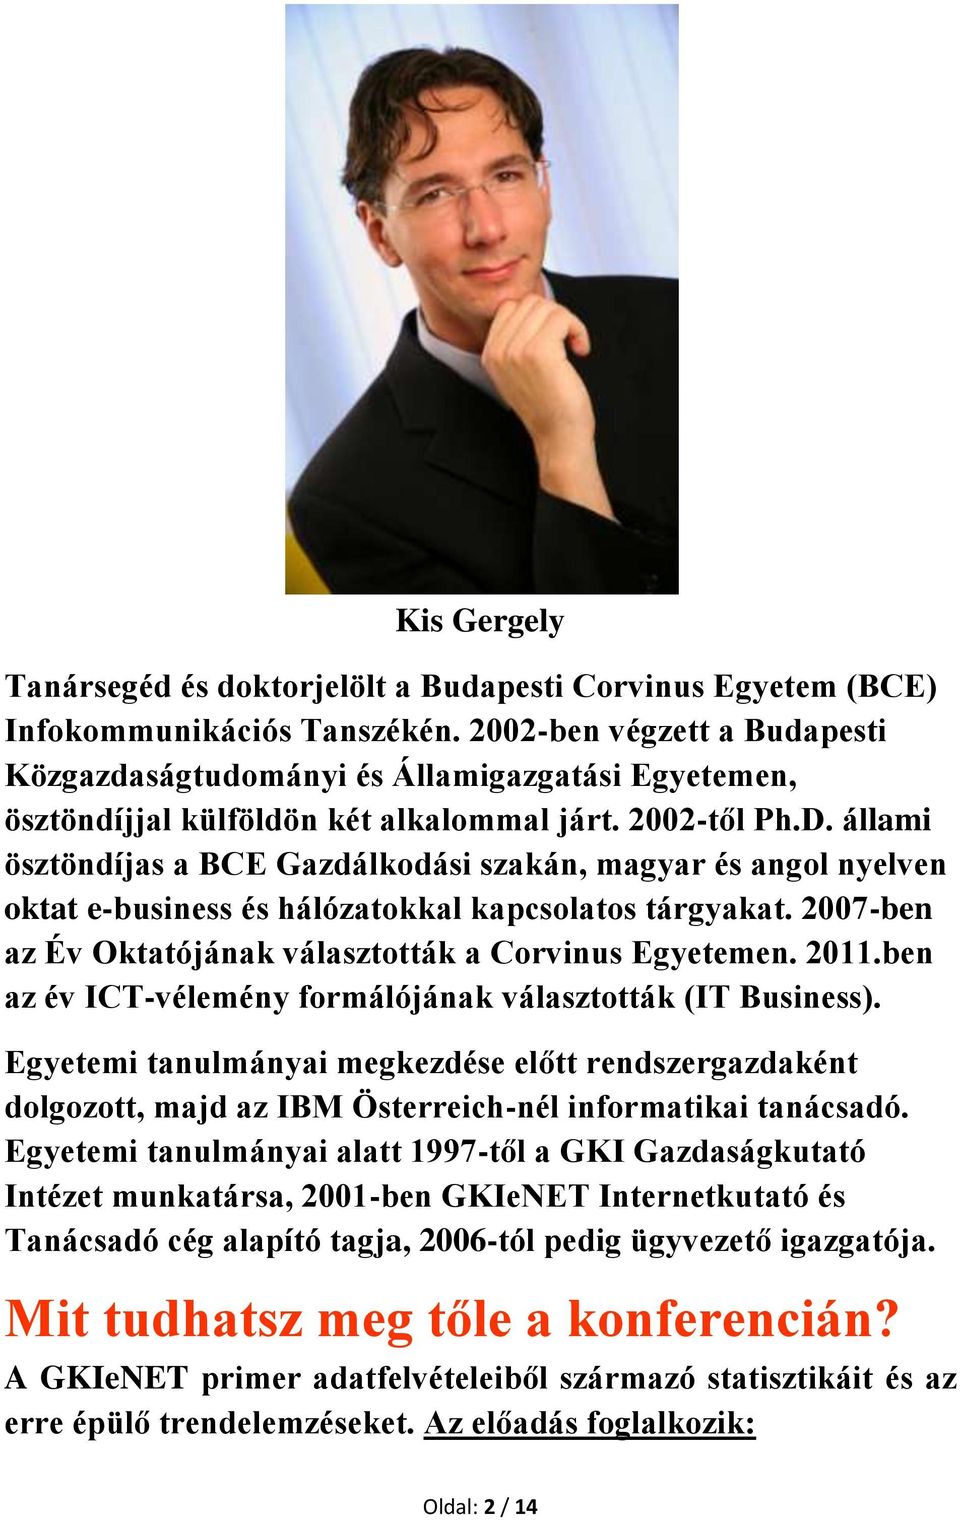 állami ösztöndíjas a BCE Gazdálkodási szakán, magyar és angol nyelven oktat e-business és hálózatokkal kapcsolatos tárgyakat. 2007-ben az Év Oktatójának választották a Corvinus Egyetemen. 2011.